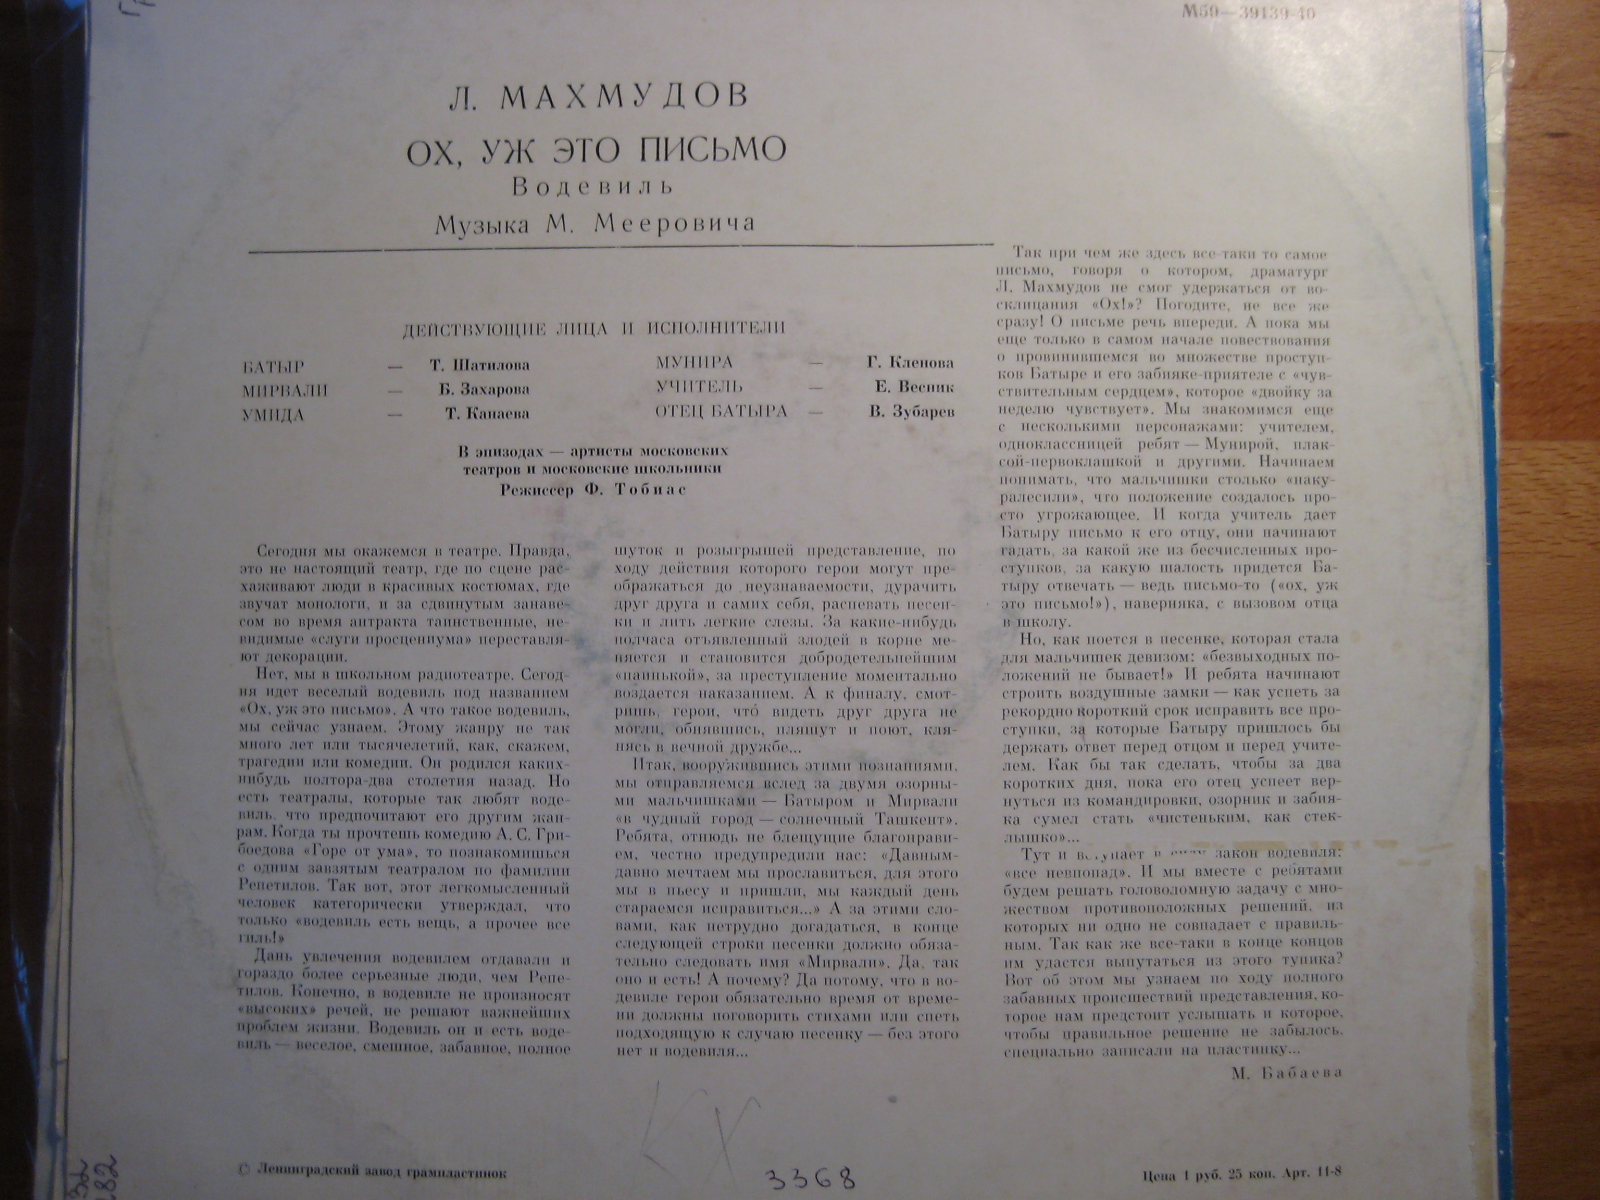 Л. МАХМУДОВ (1935): "Ох, уж это письмо", водевиль (музыка М. Мееровича)